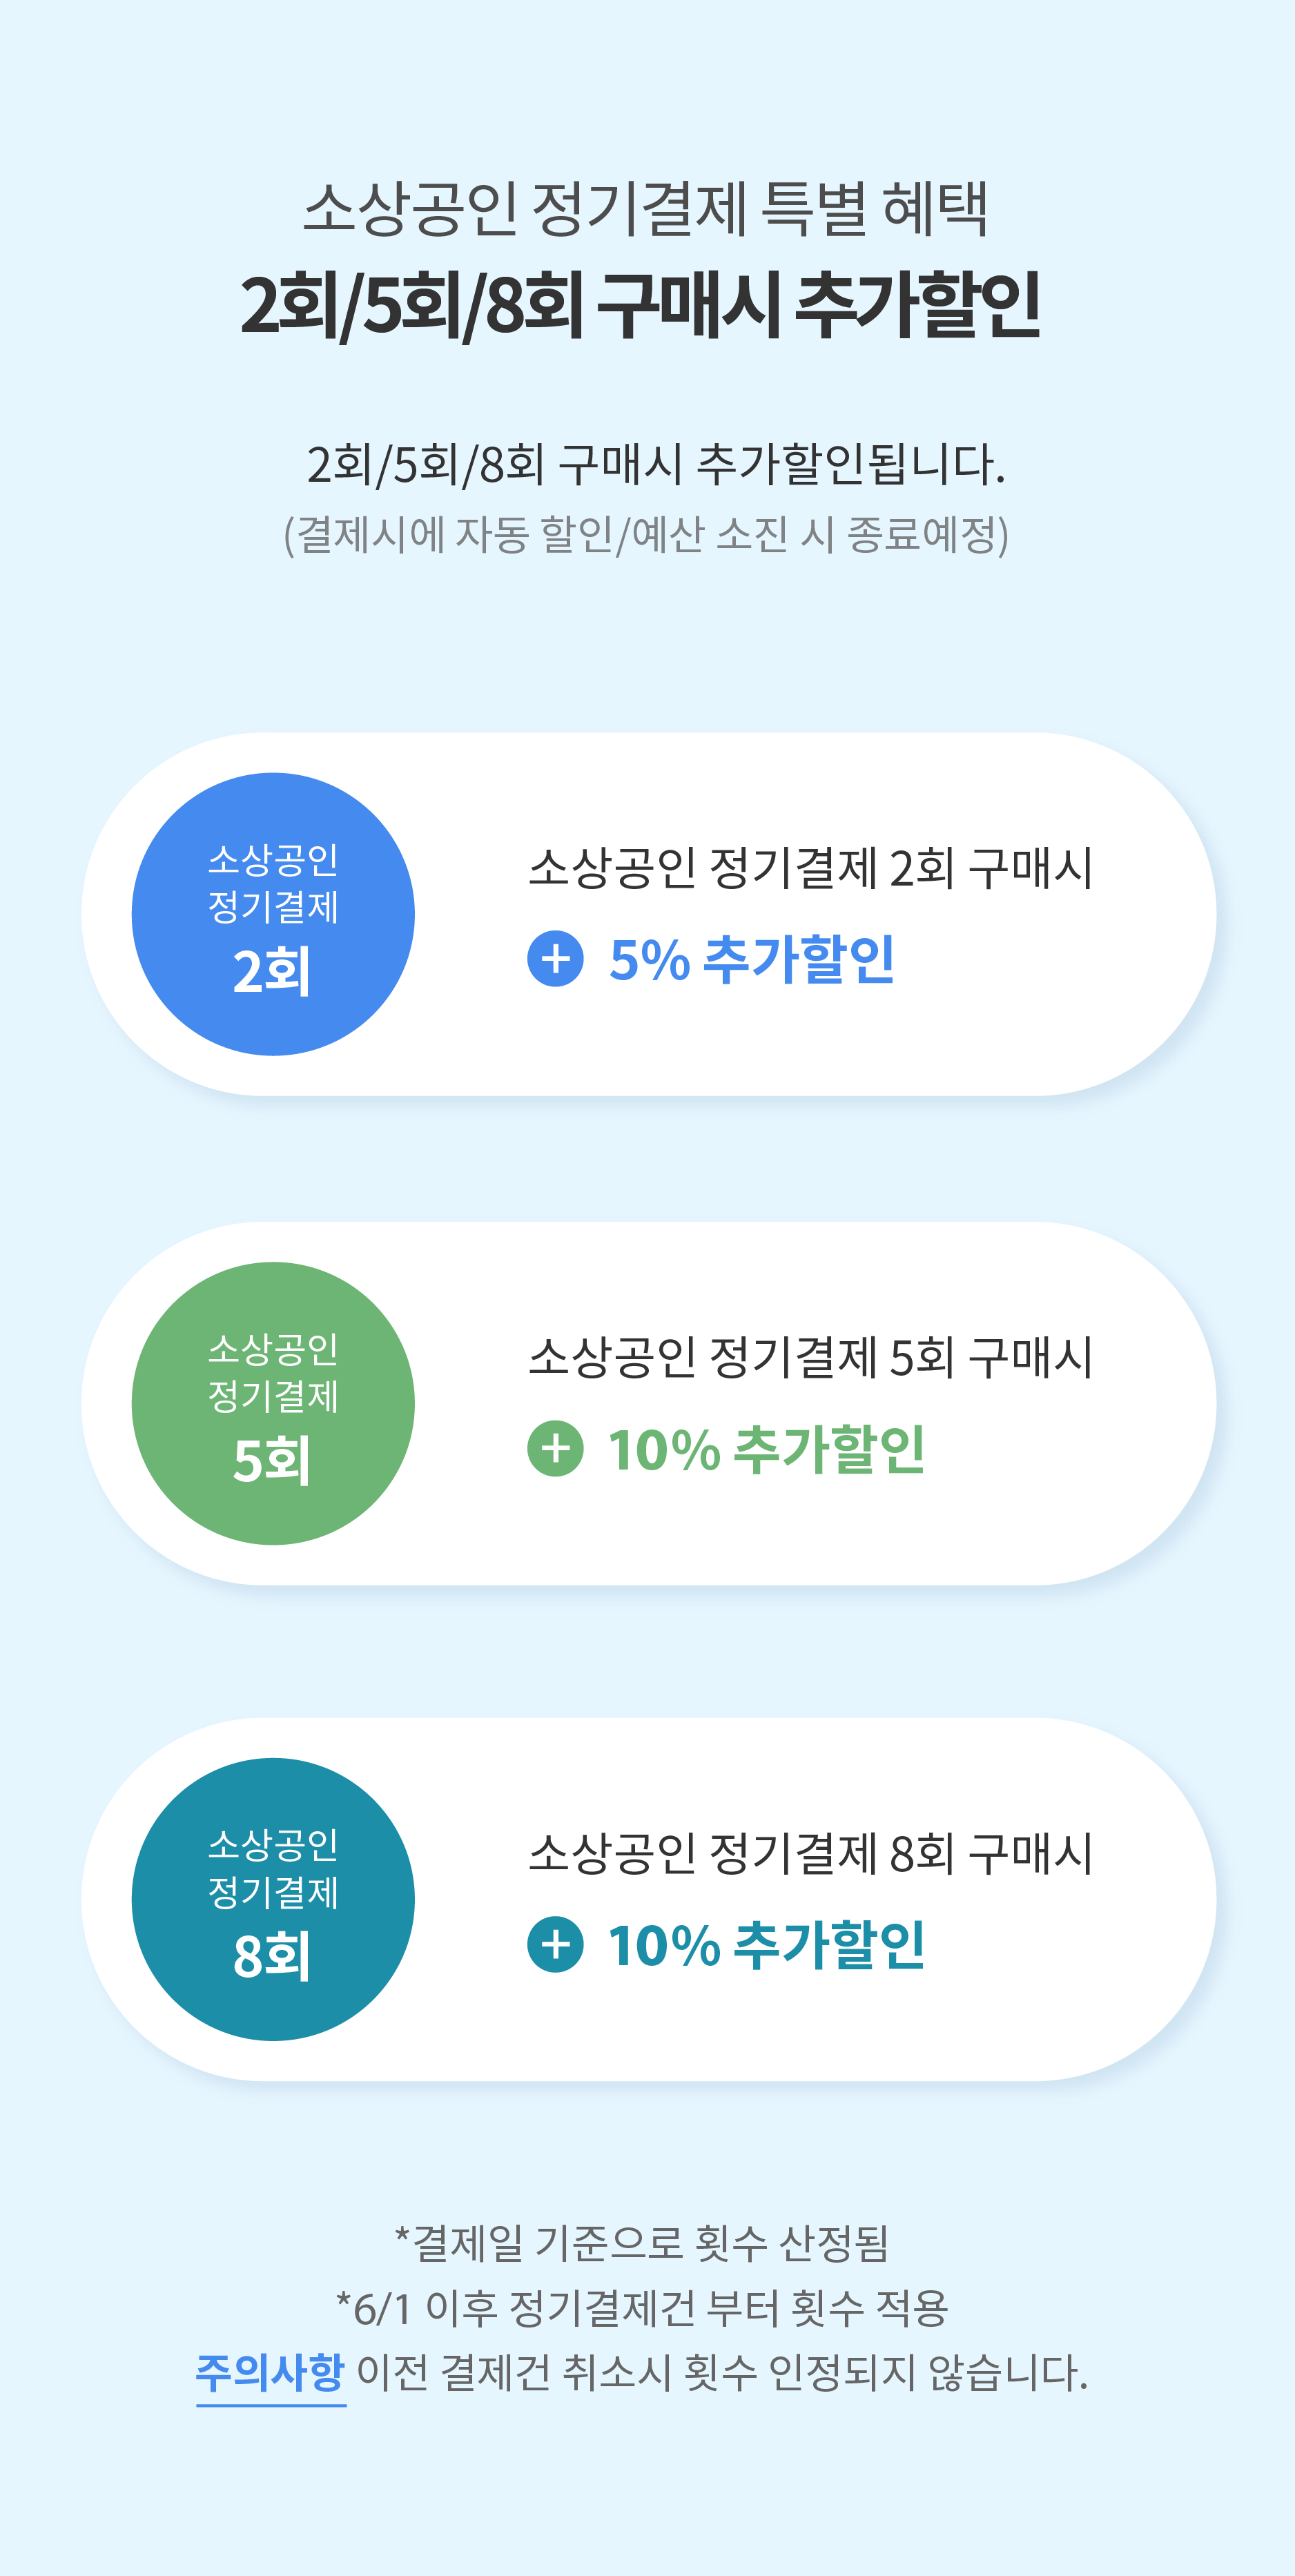 소상공인 정기결제 특별 혜택 2회/5회/8회 구매 시 추가할인